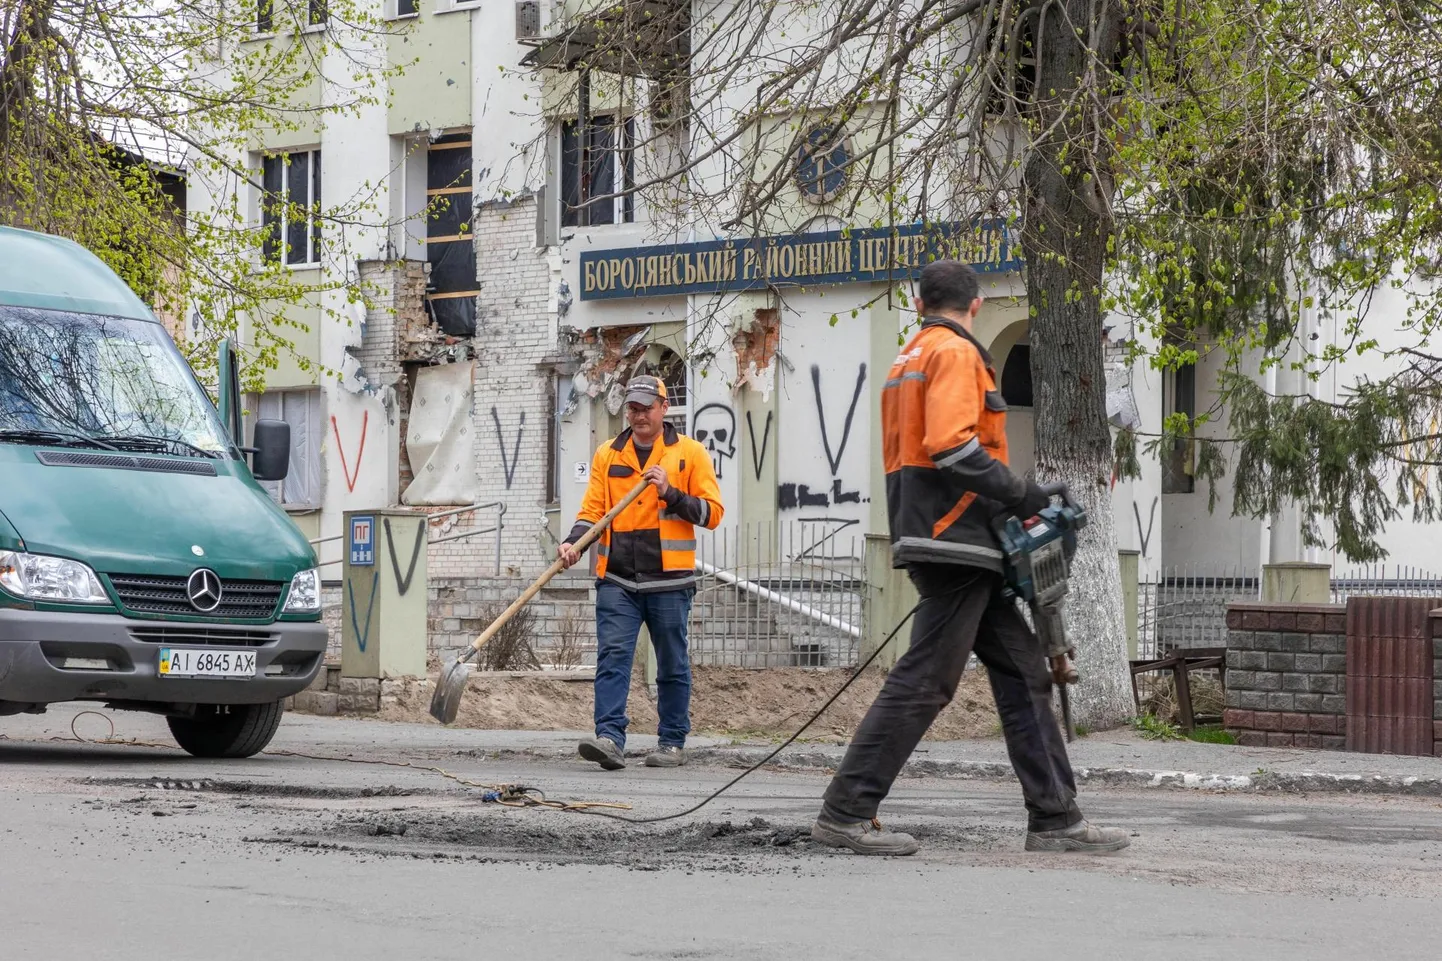 Kiievi lähistel Borodjankas käivad hoogsad koristus- ja taastamistööd. Teiste hulgas on ametis teetöölised, kes lapivad loendamatuid tänavaauke.